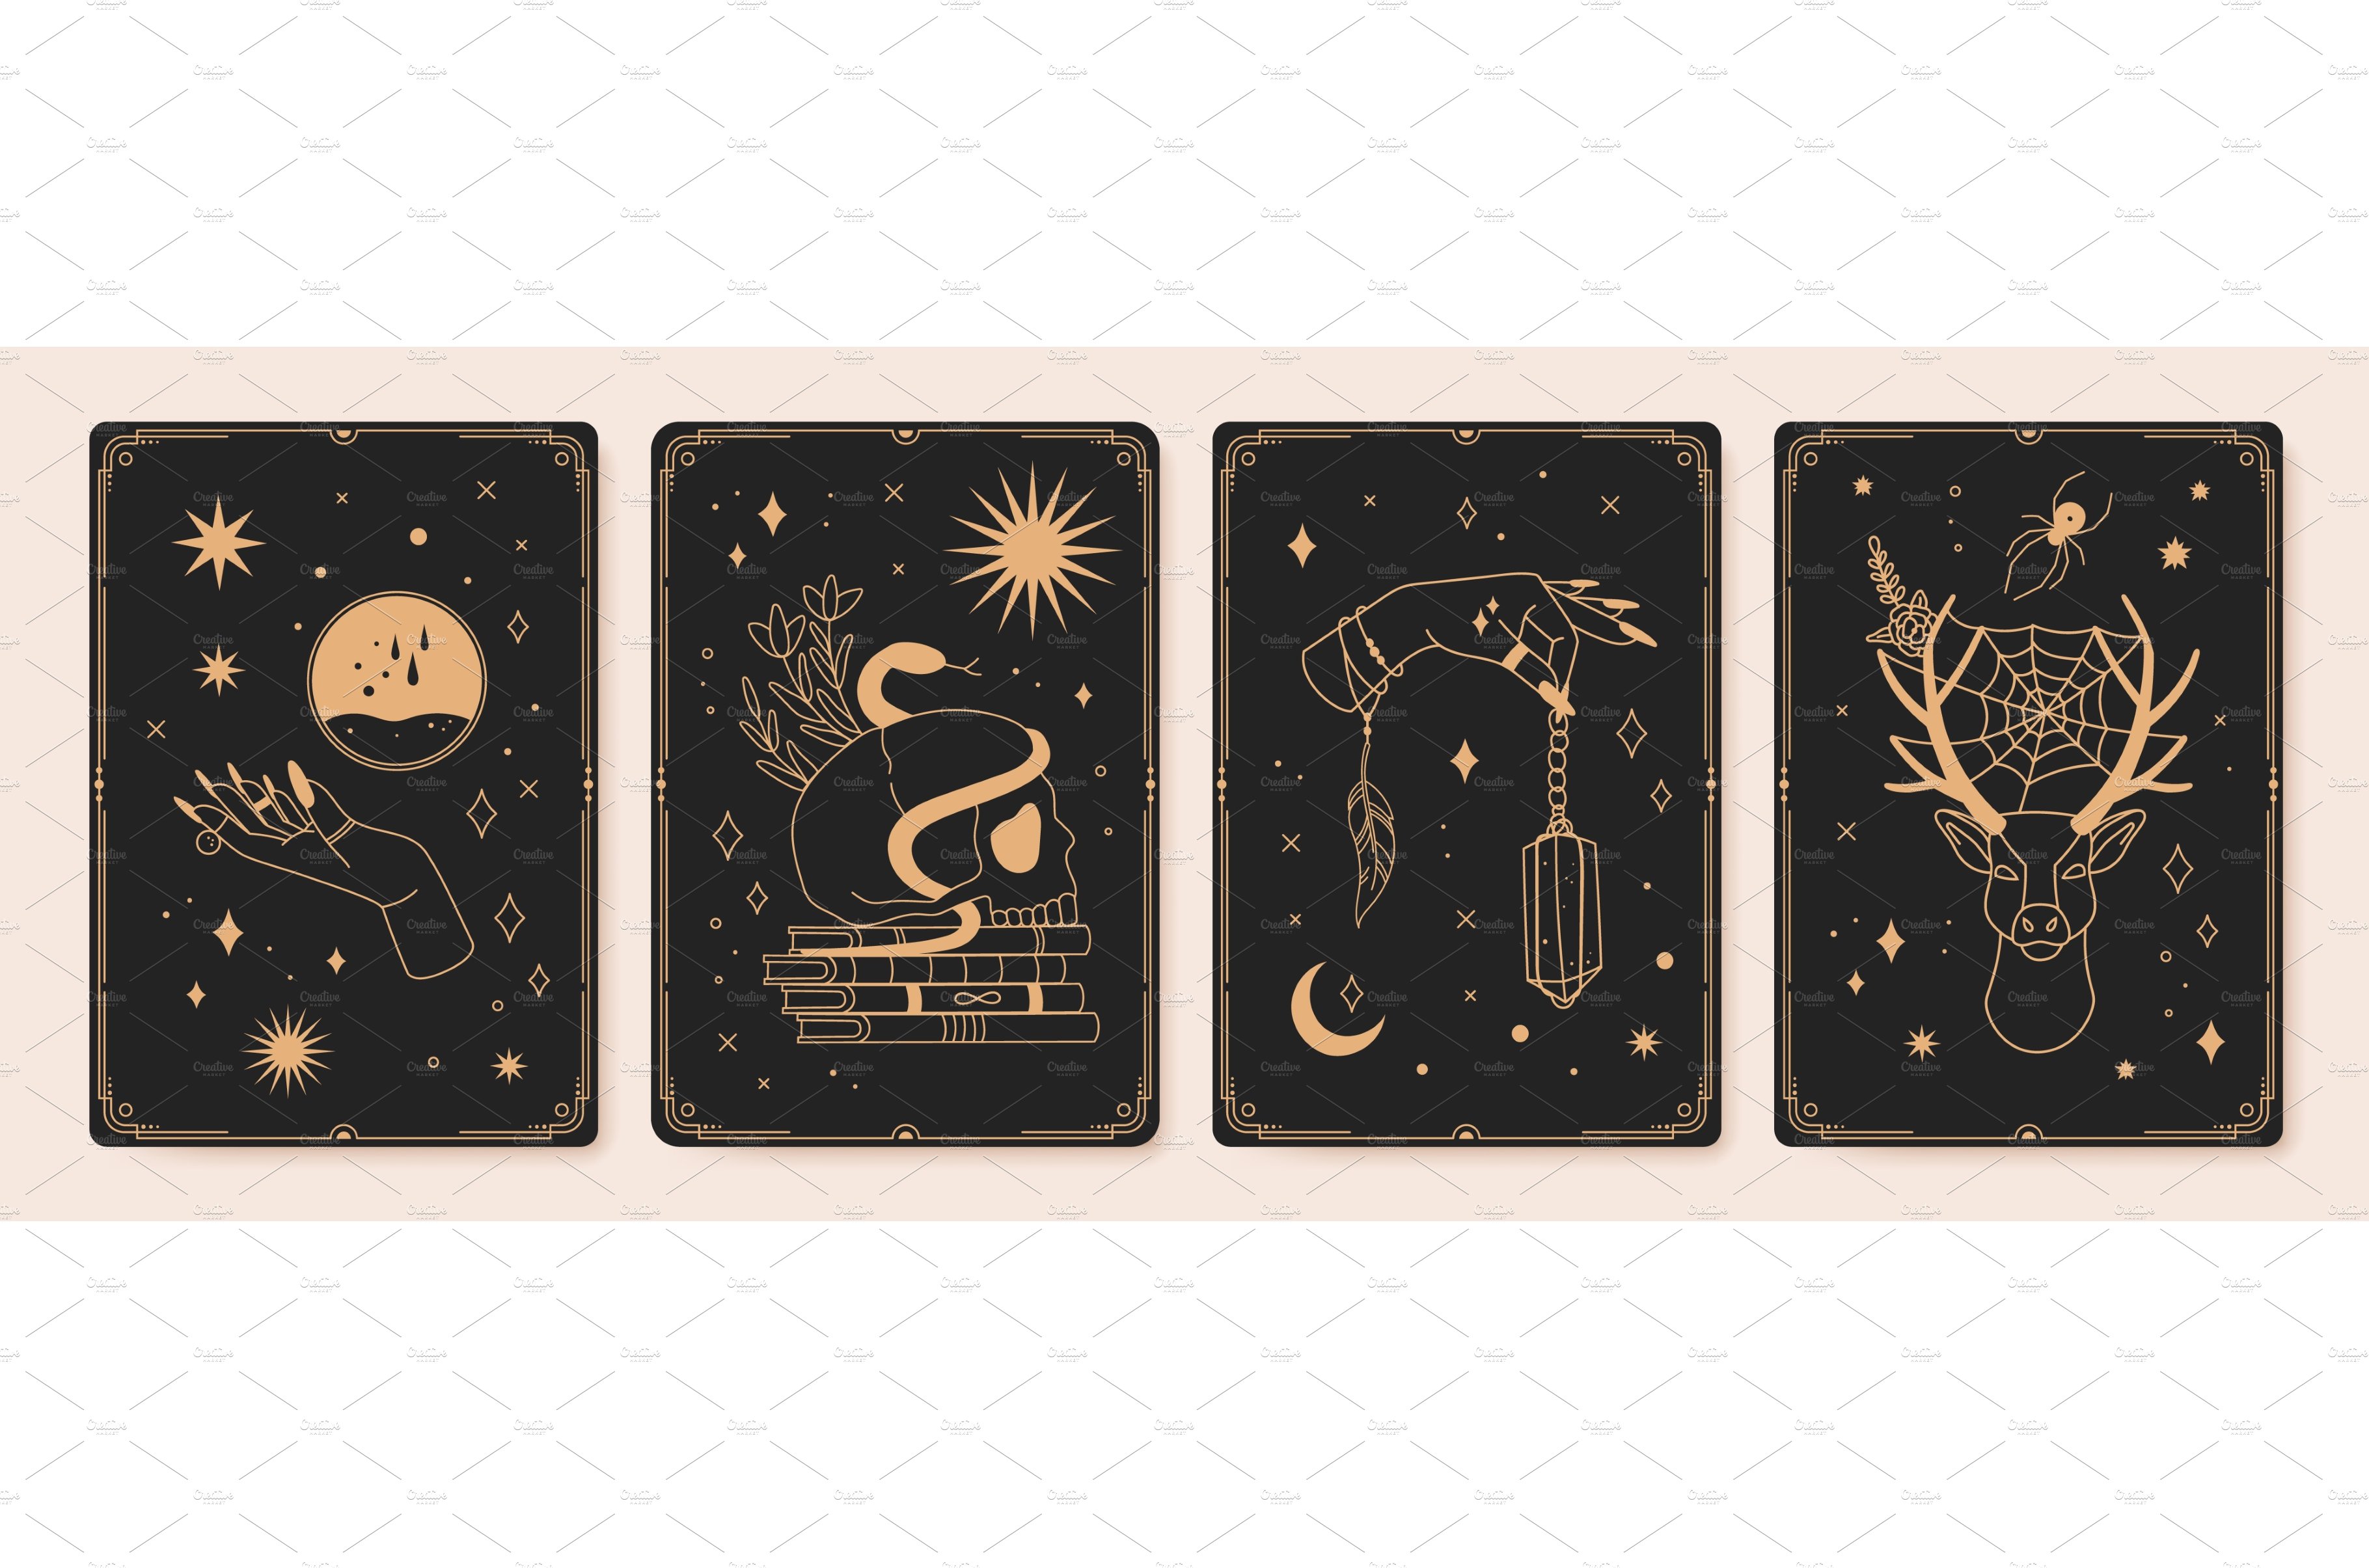 Magic spiritual tarot cards with cover image.